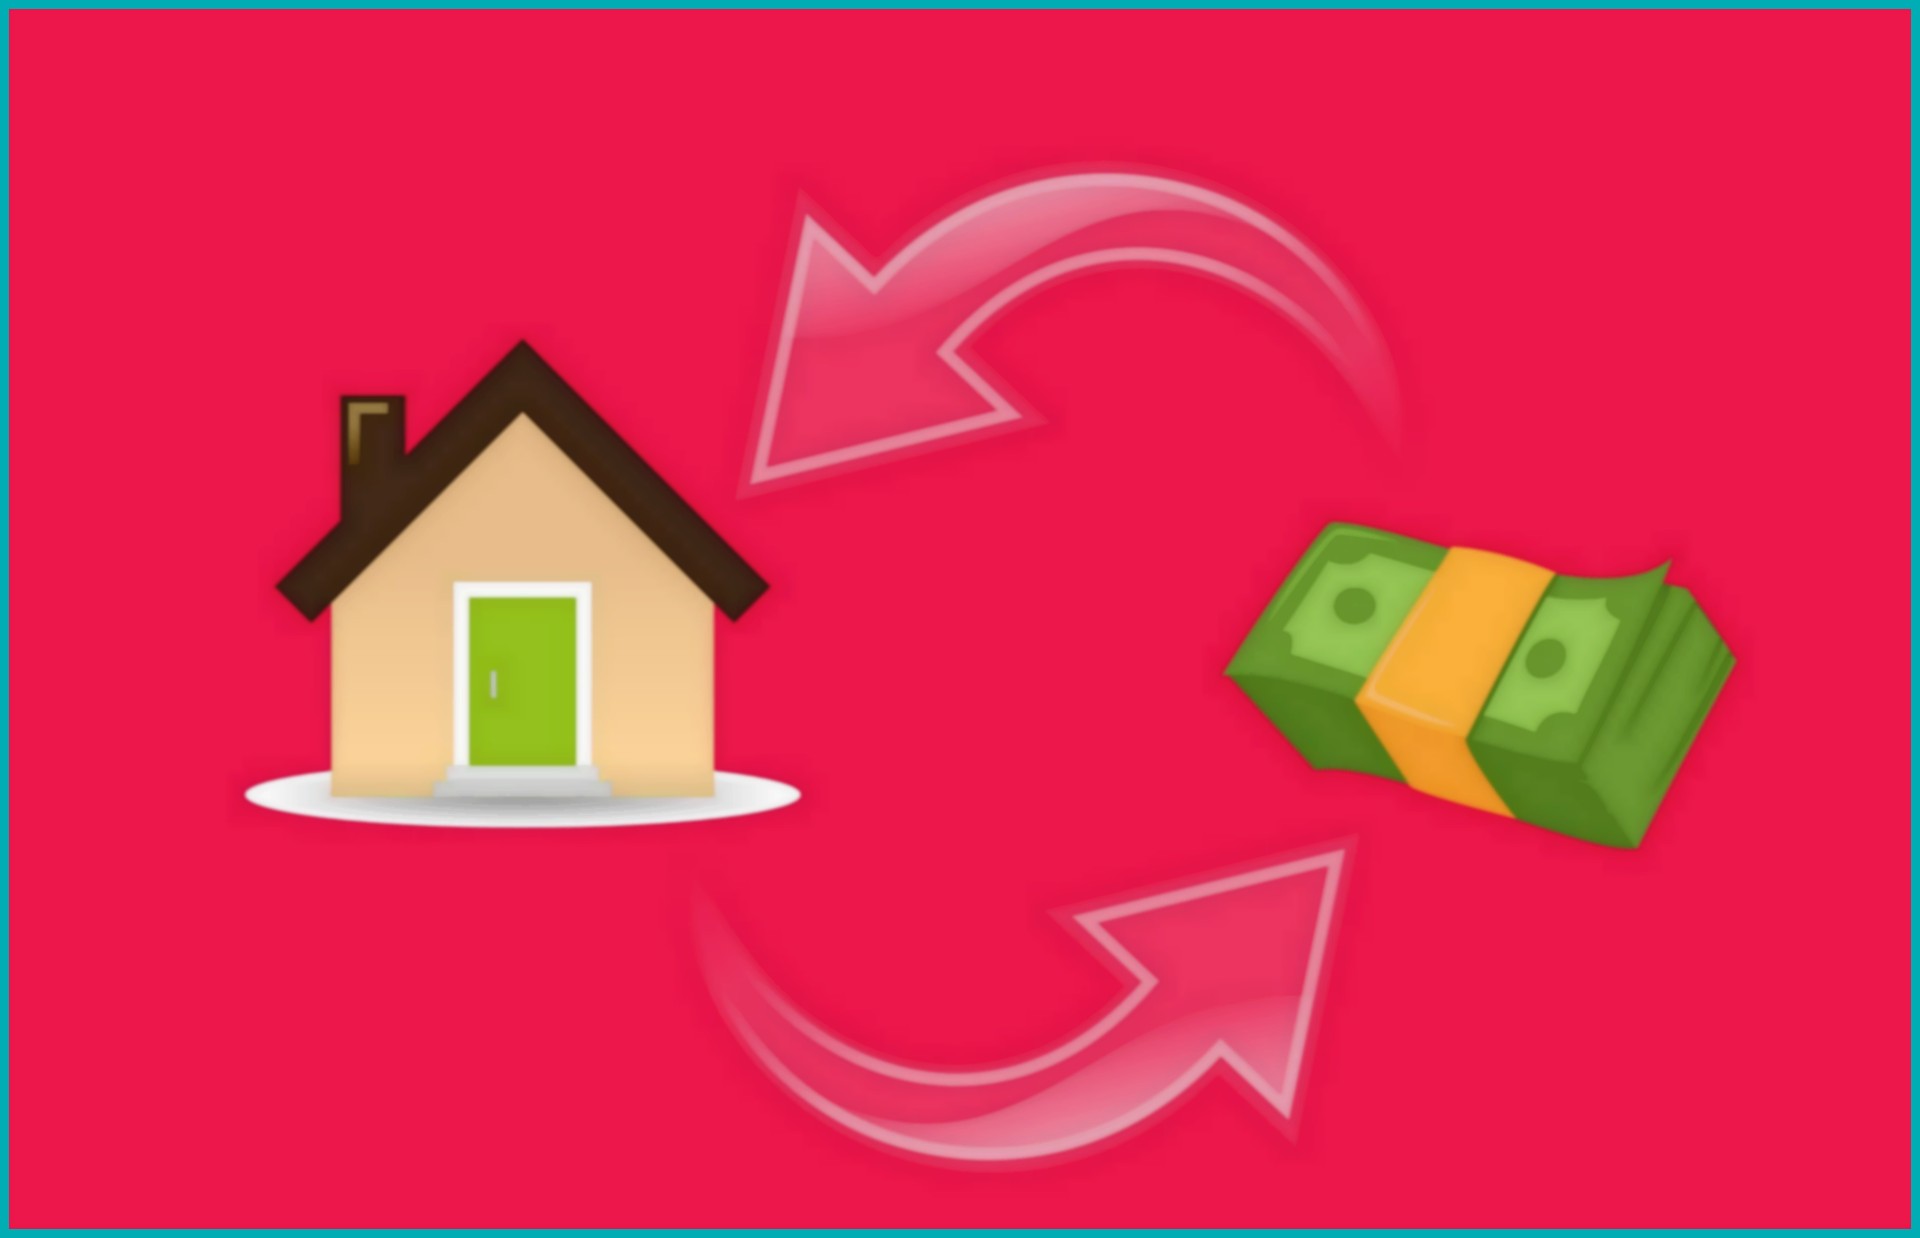 Ilustração de uma casa e um dinheiro simulando um consórcio imobiliário